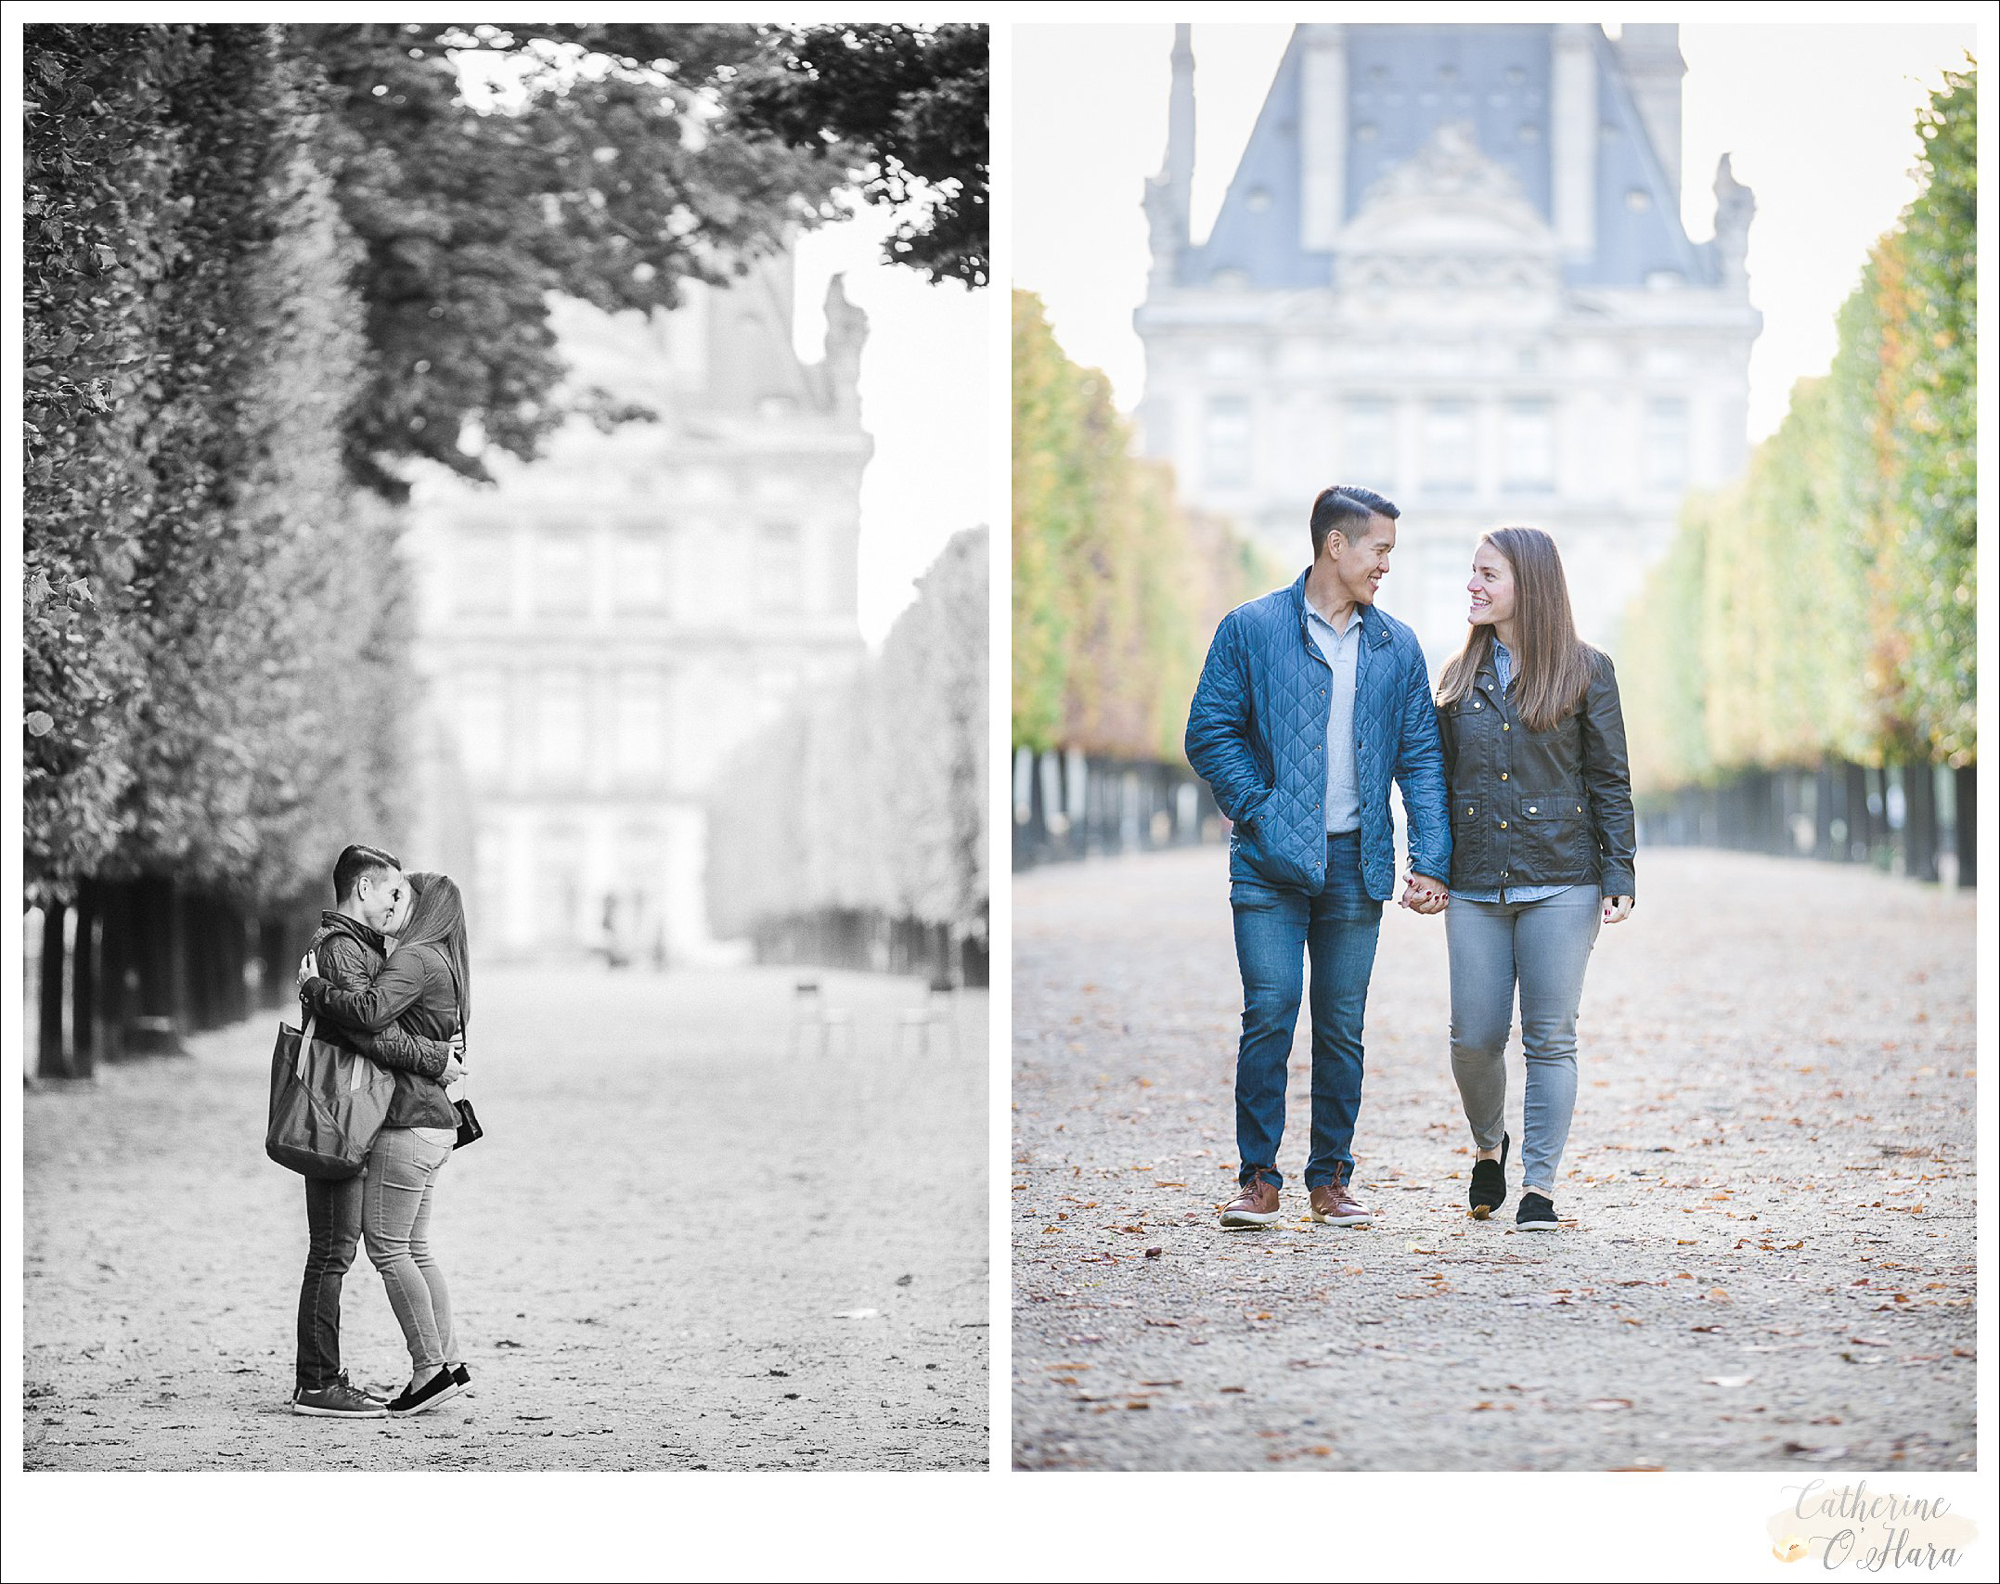 surprise proposal engagement photographer paris france-25.jpg